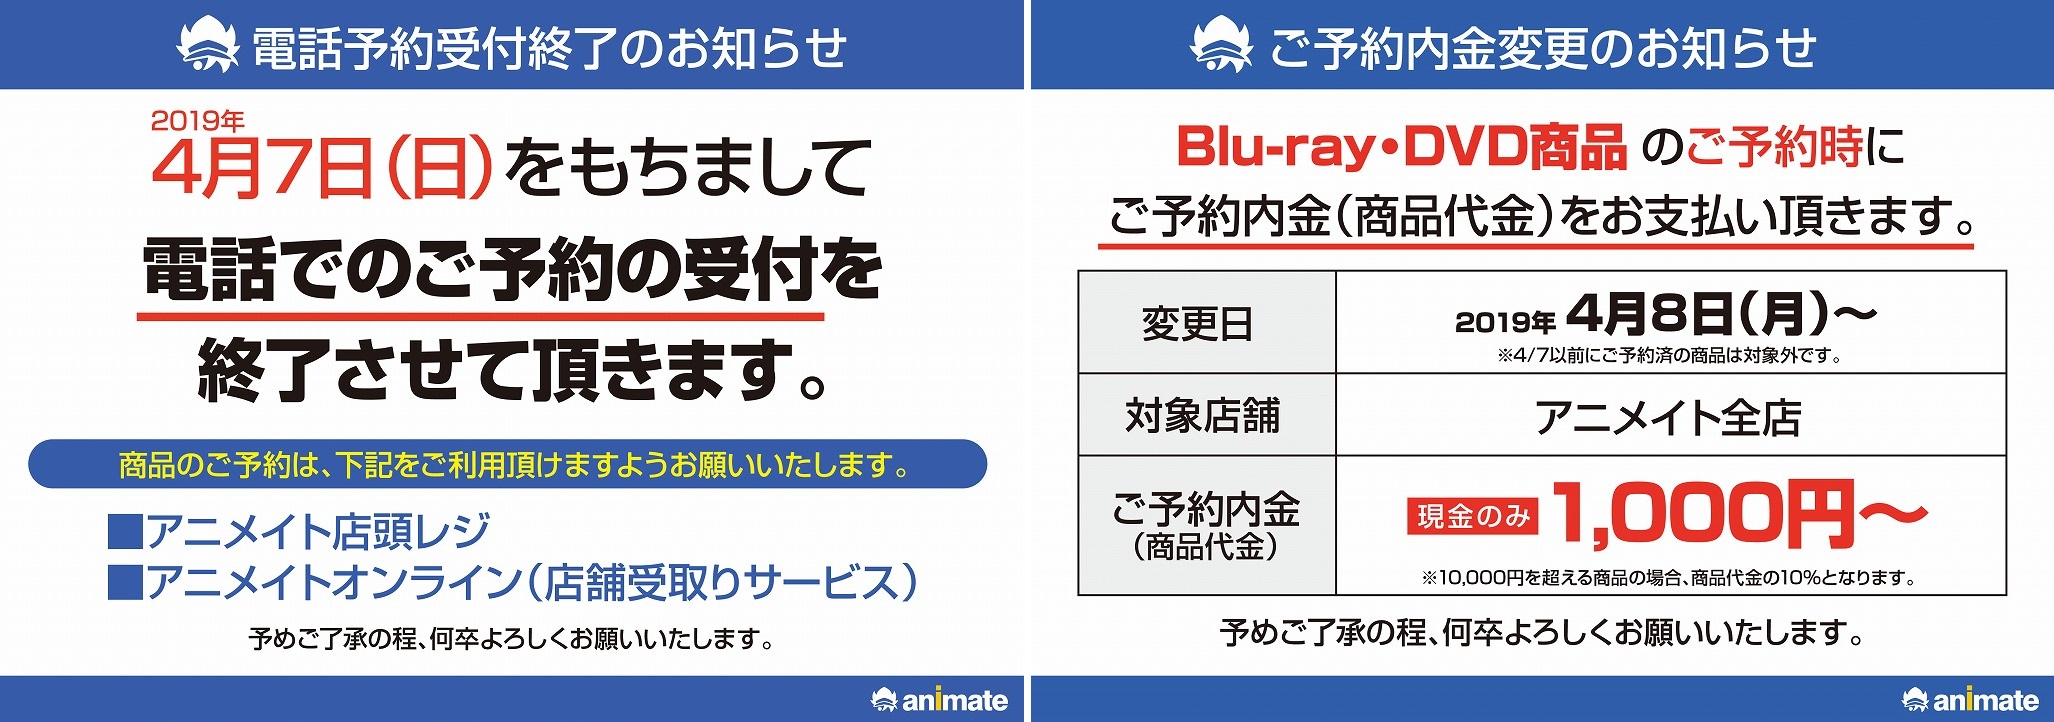 電話予約の終了・BD/DVD予約内金必須について - アニメイト姫路